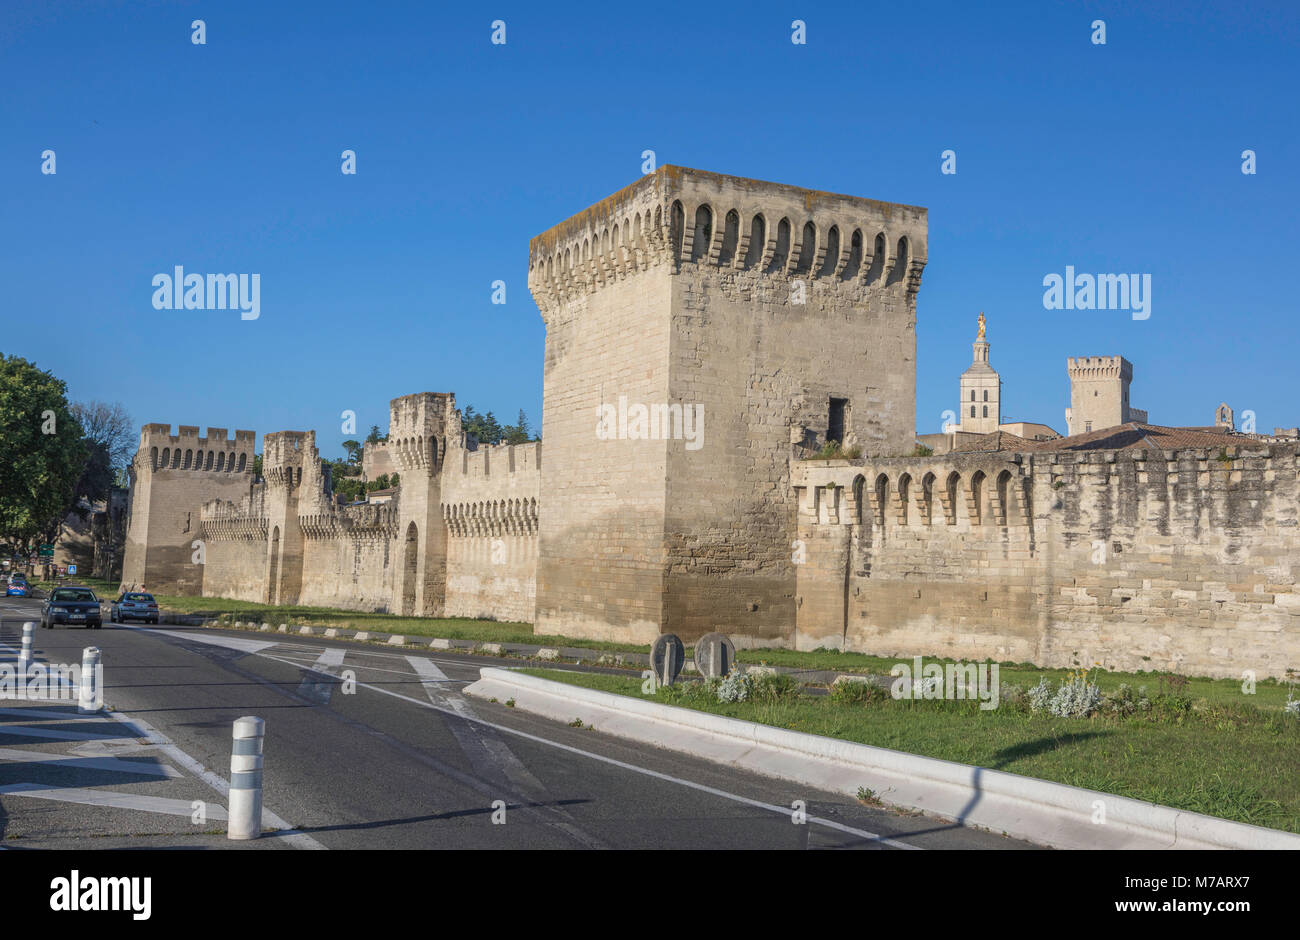 France, Provence, ville d'Avignon, le Palais des Papes, les murs d'Avignon Banque D'Images